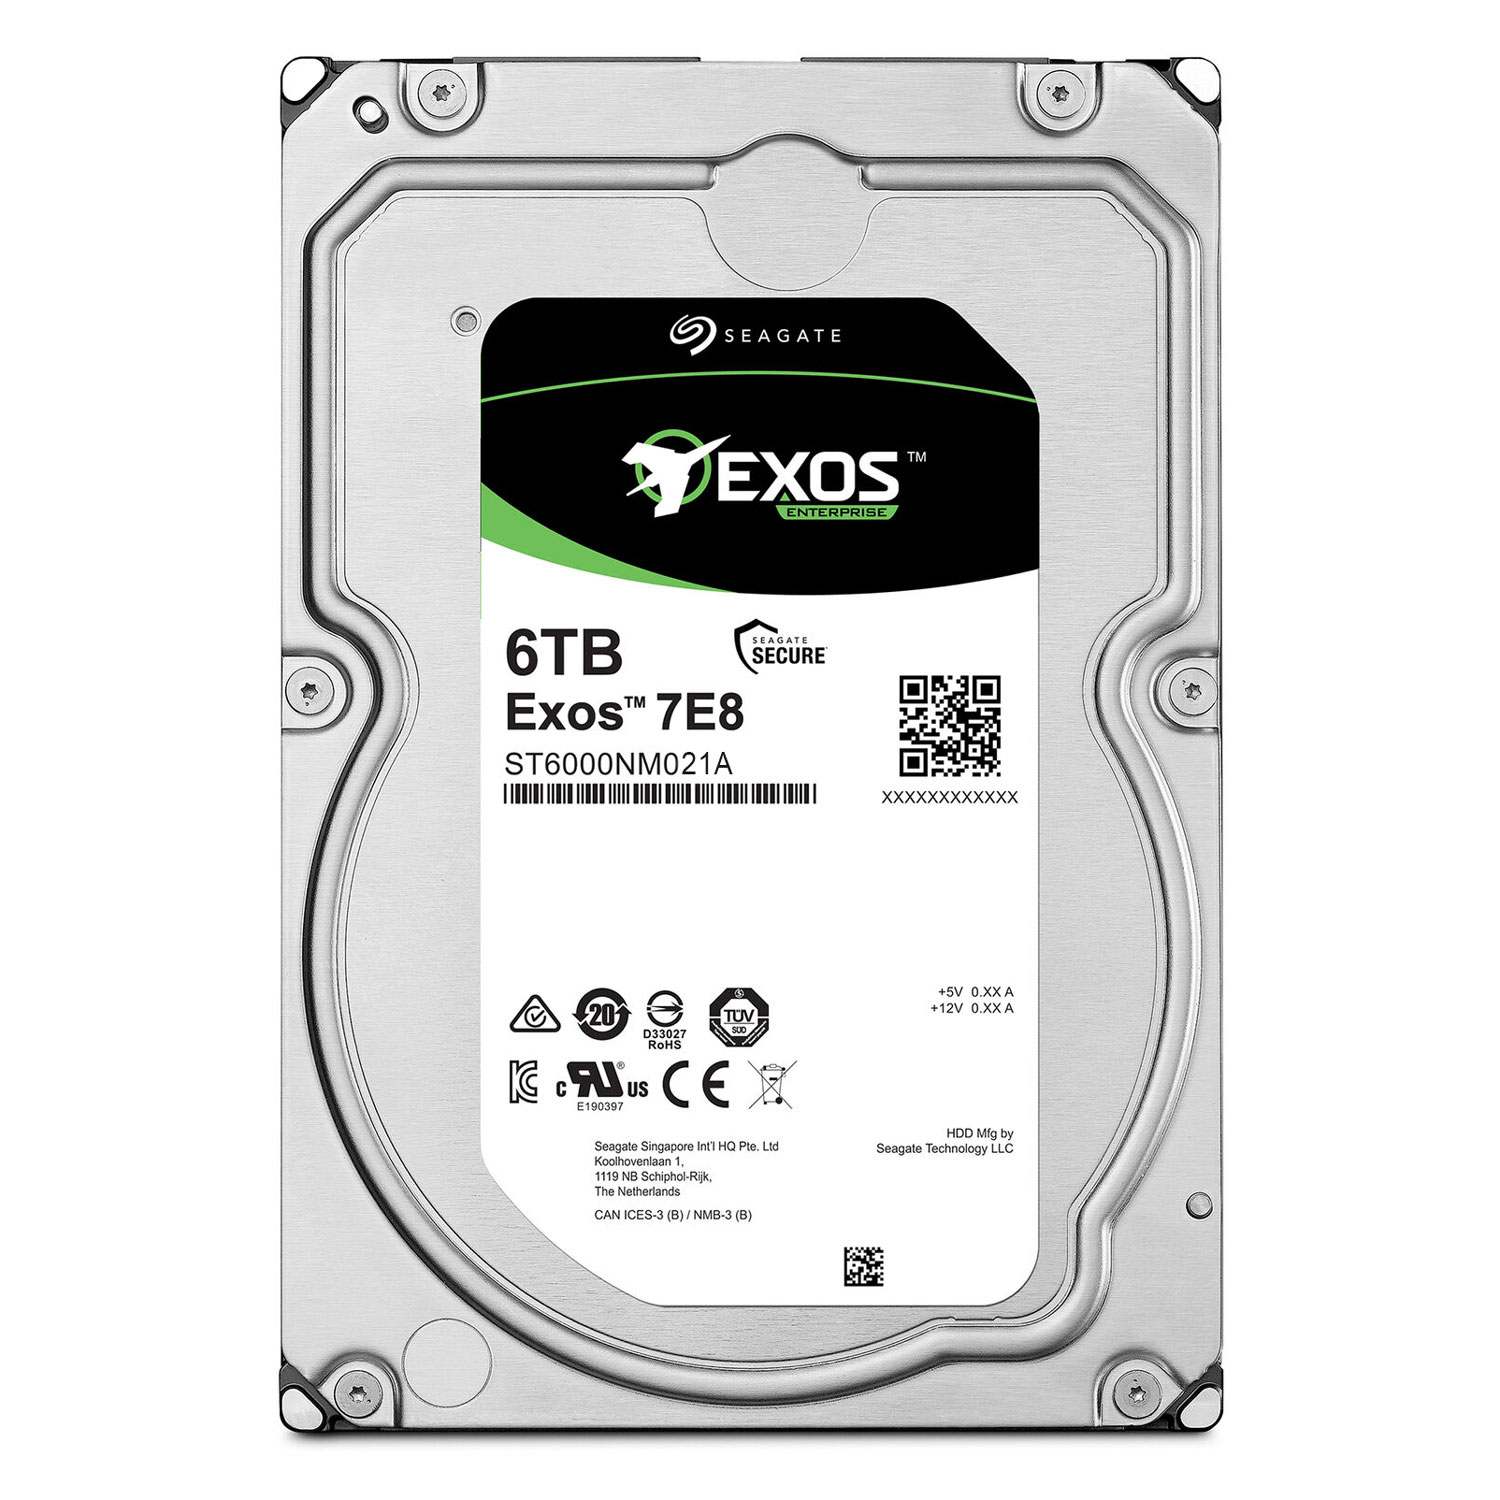 هارد دیسک اینترنال سیگیت مدل Exos 7E8 ST6000NM021A ظرفیت 6 ترابایت